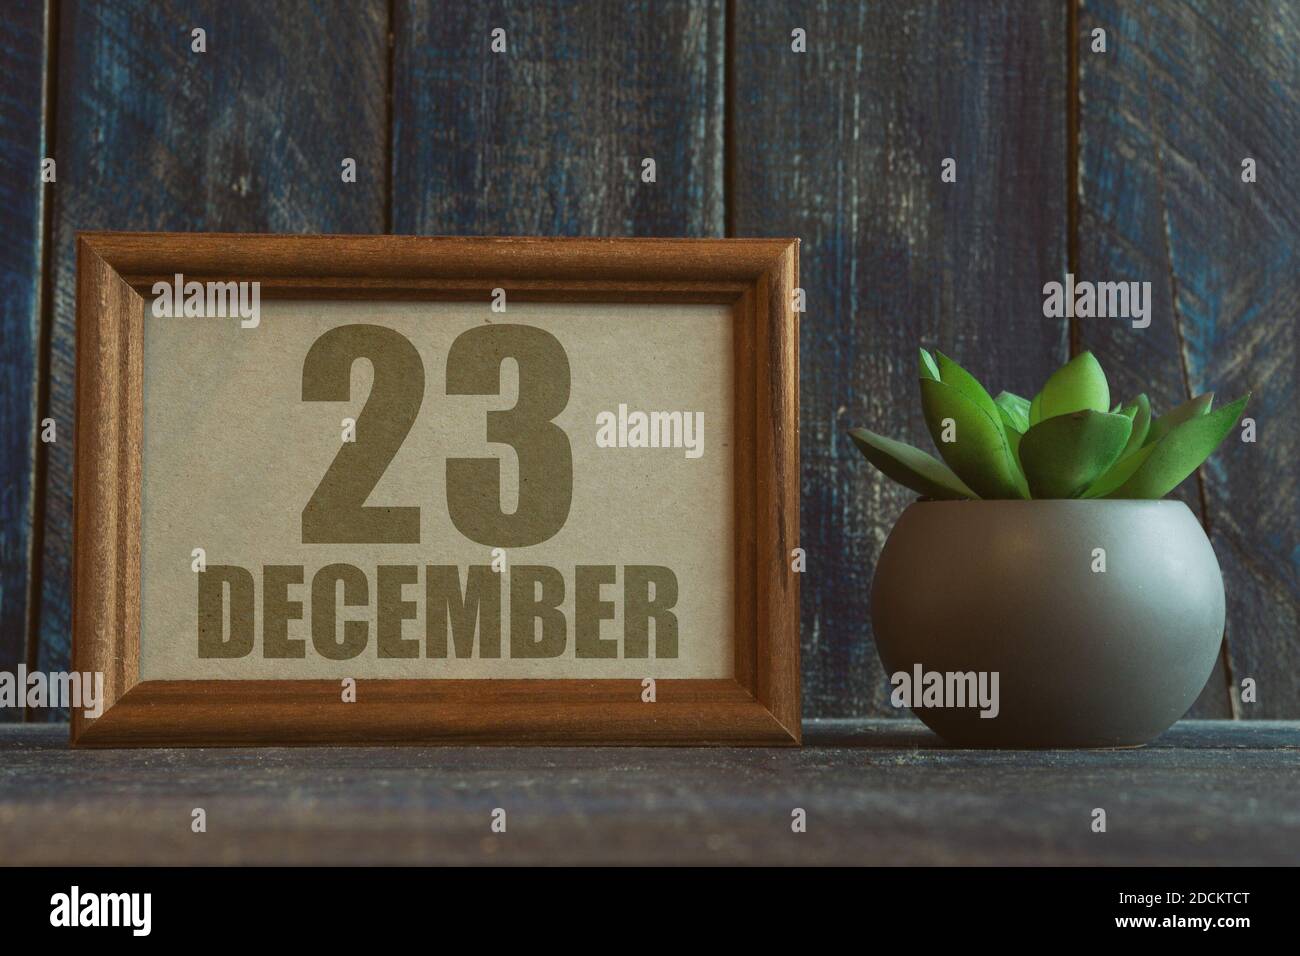 dezember. Tag 23 des Monats, Datum im Rahmen neben Sukkulente auf Holzhintergrund Wintermonat, Tag des Jahres Konzept. Stockfoto